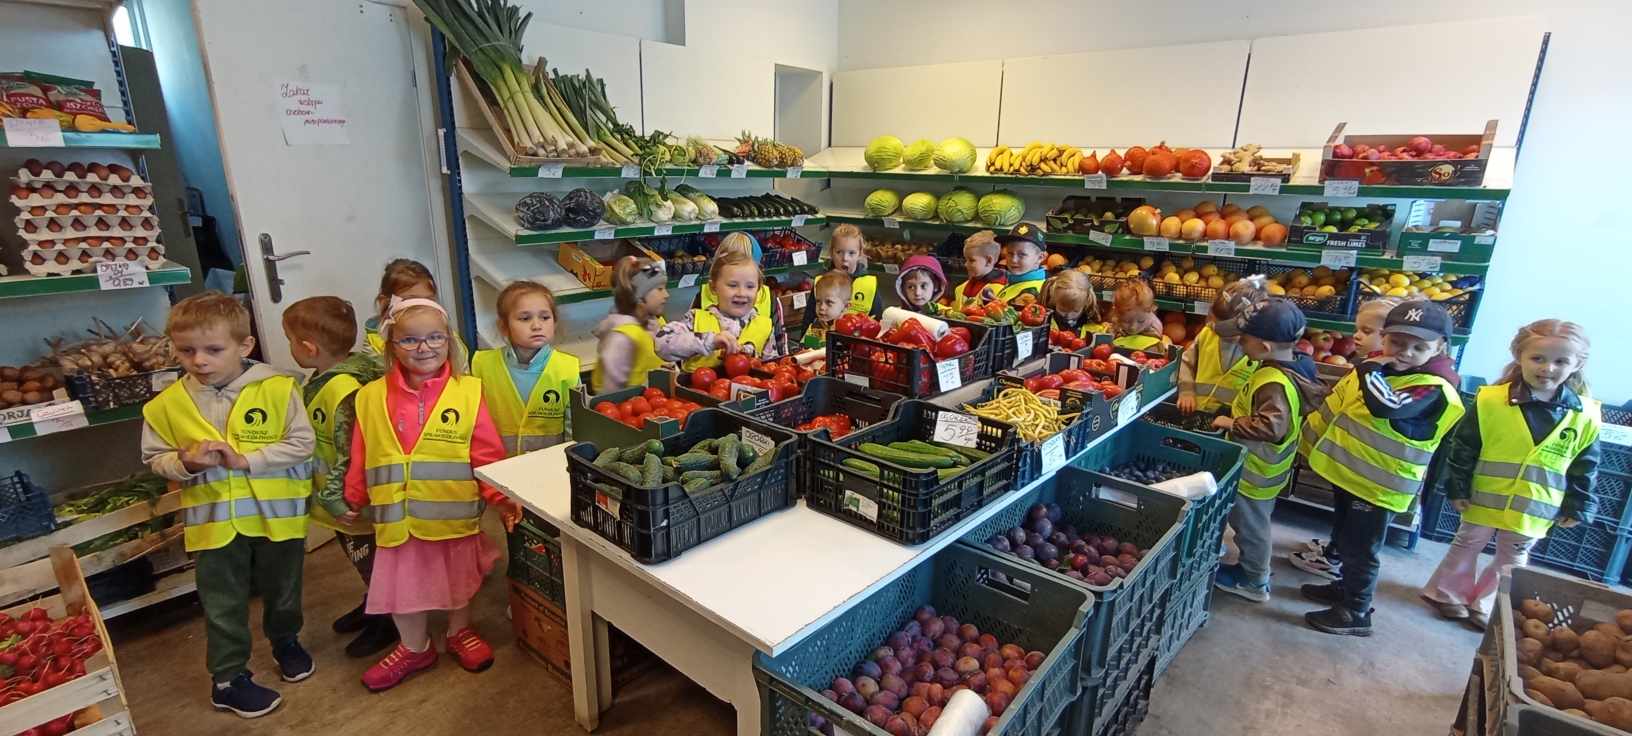 Grupa dzieci stoi w sklepie między regałem a stoiskiem z warzywami. Do koła leży dużo warzyw i owoców w skrzynkach.